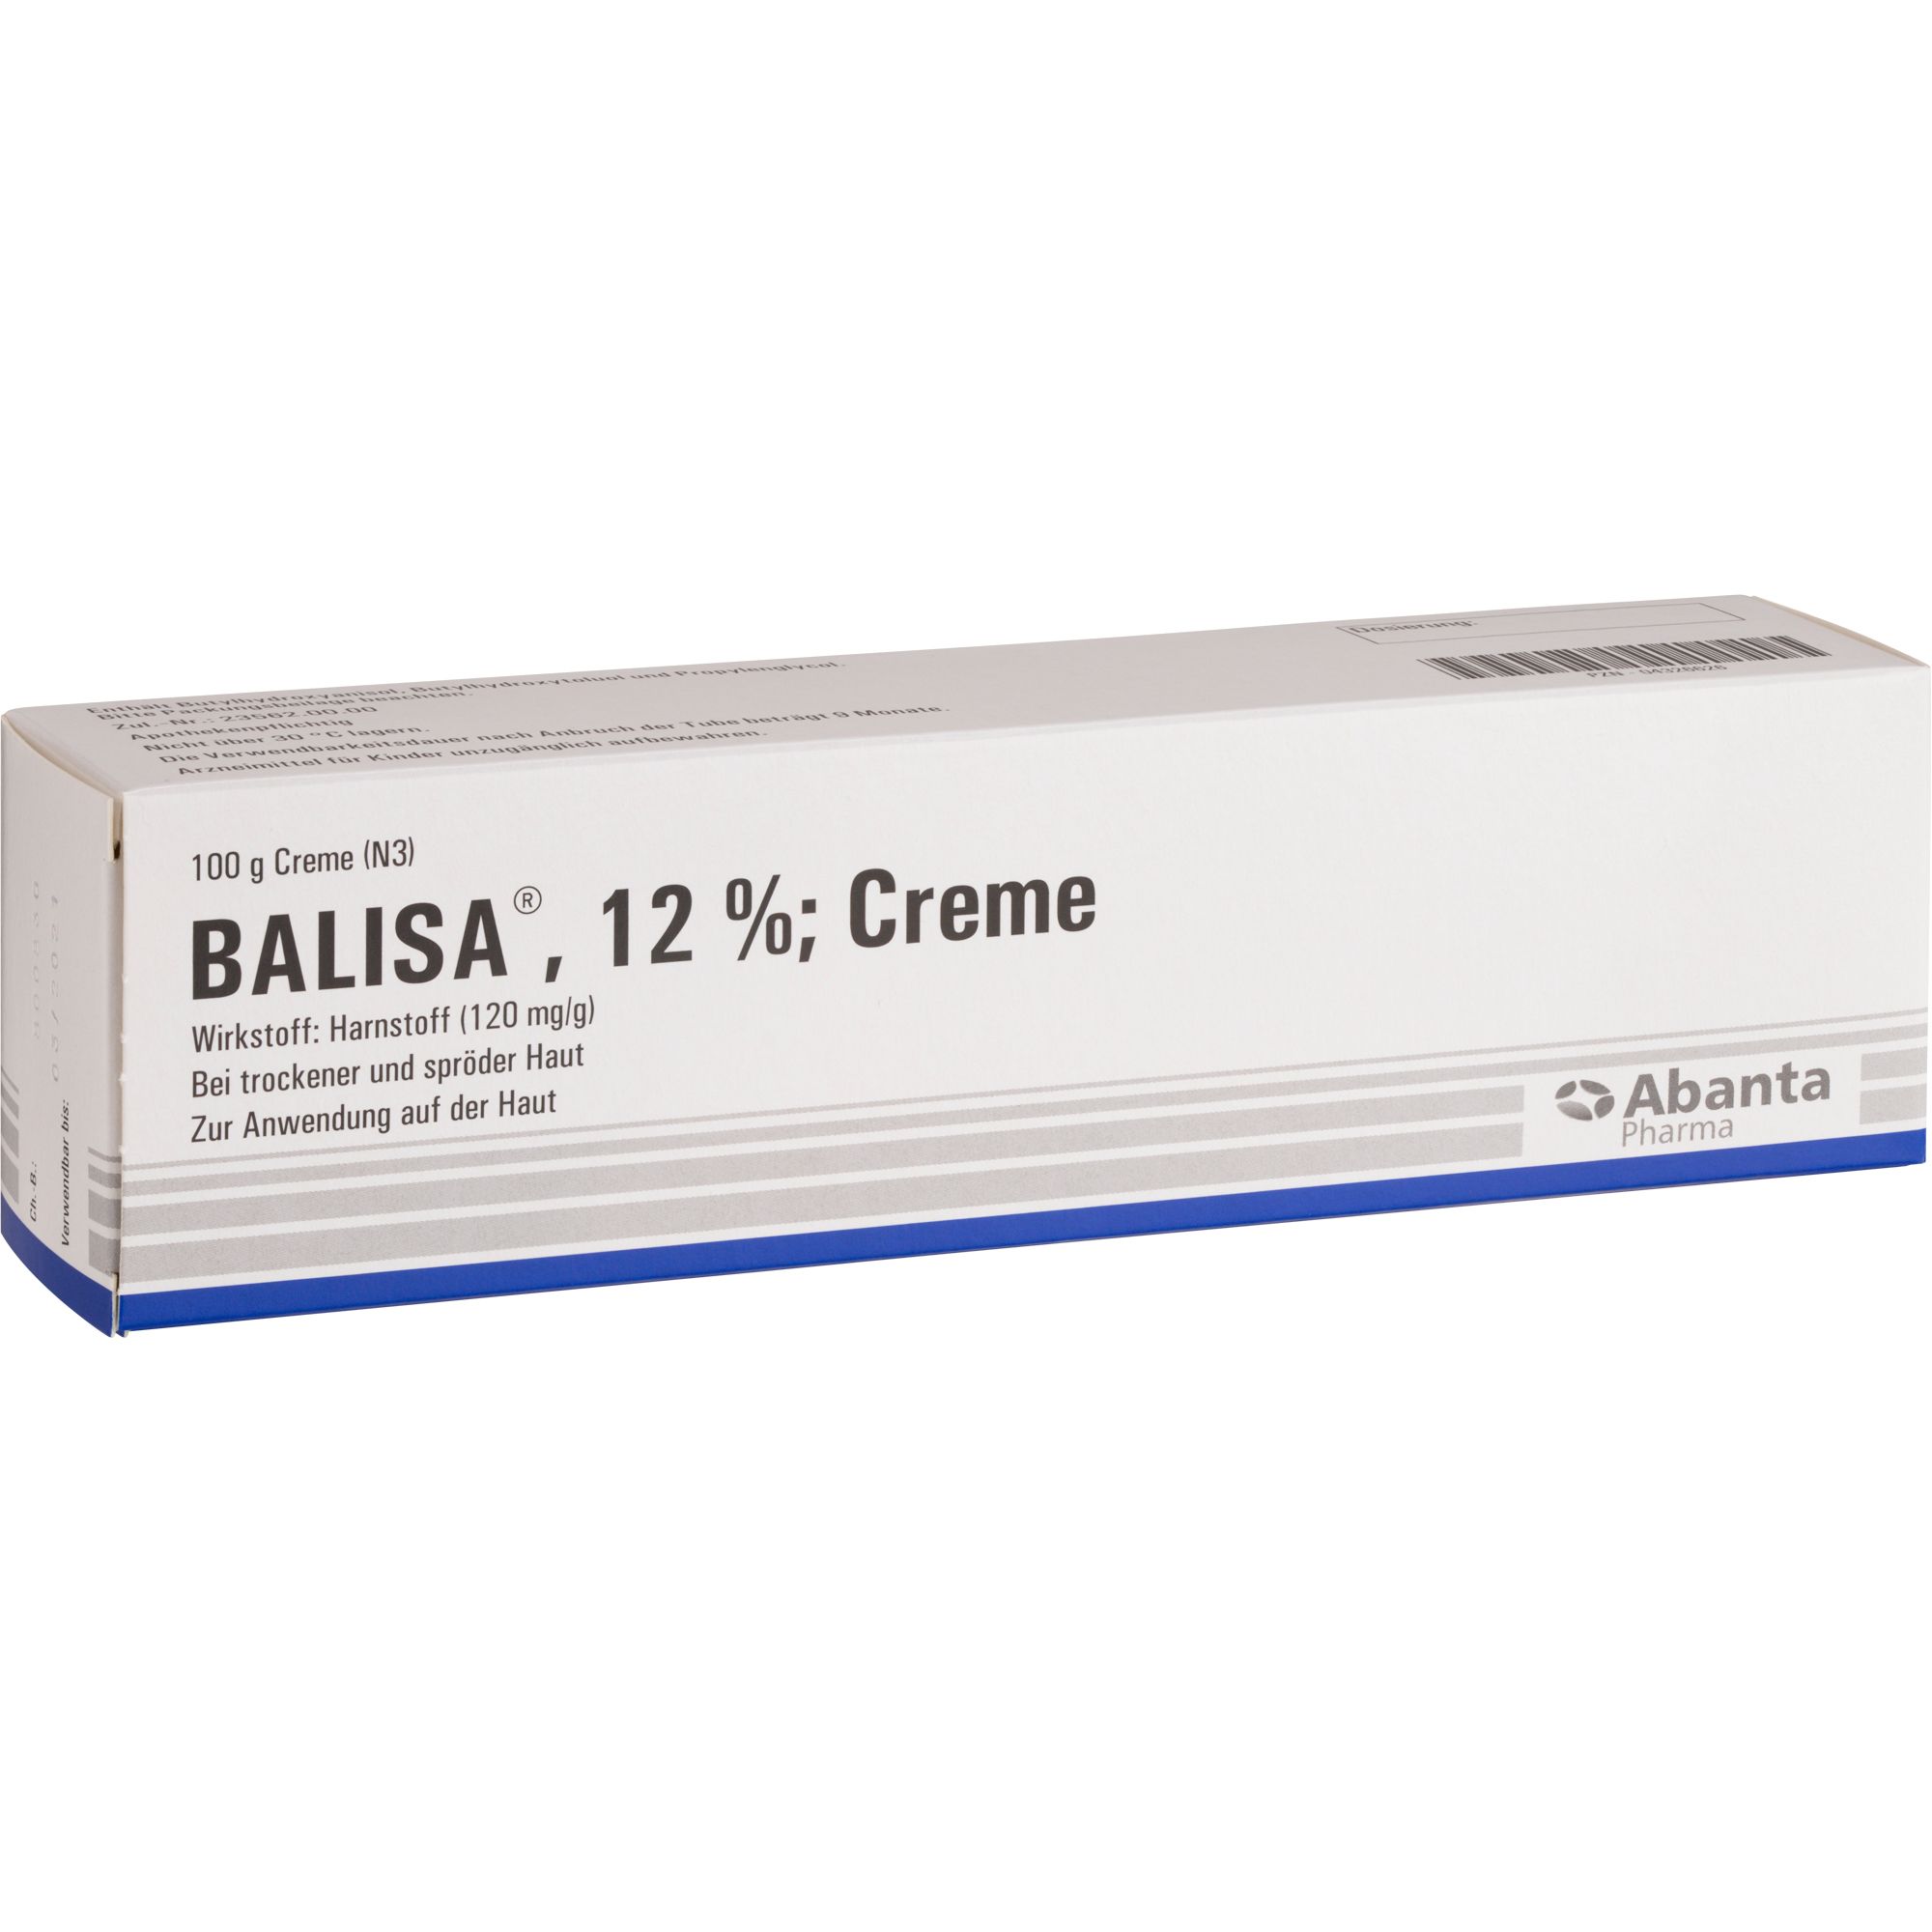 Balisa® 12 %